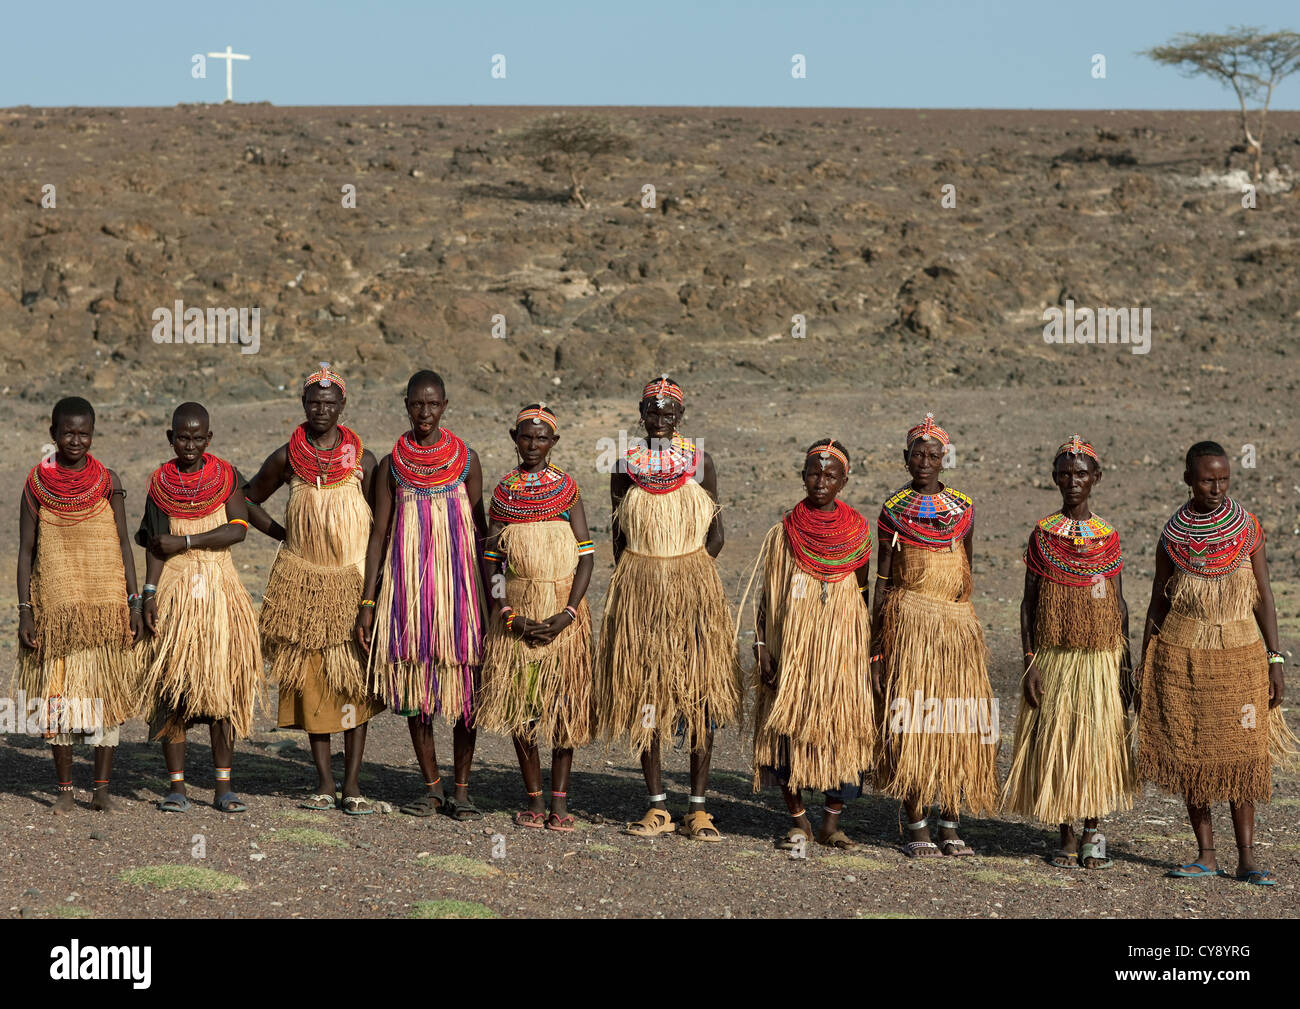 El Molo Tribe, Turkana Lake, Kenya Stock Photo - Alamy